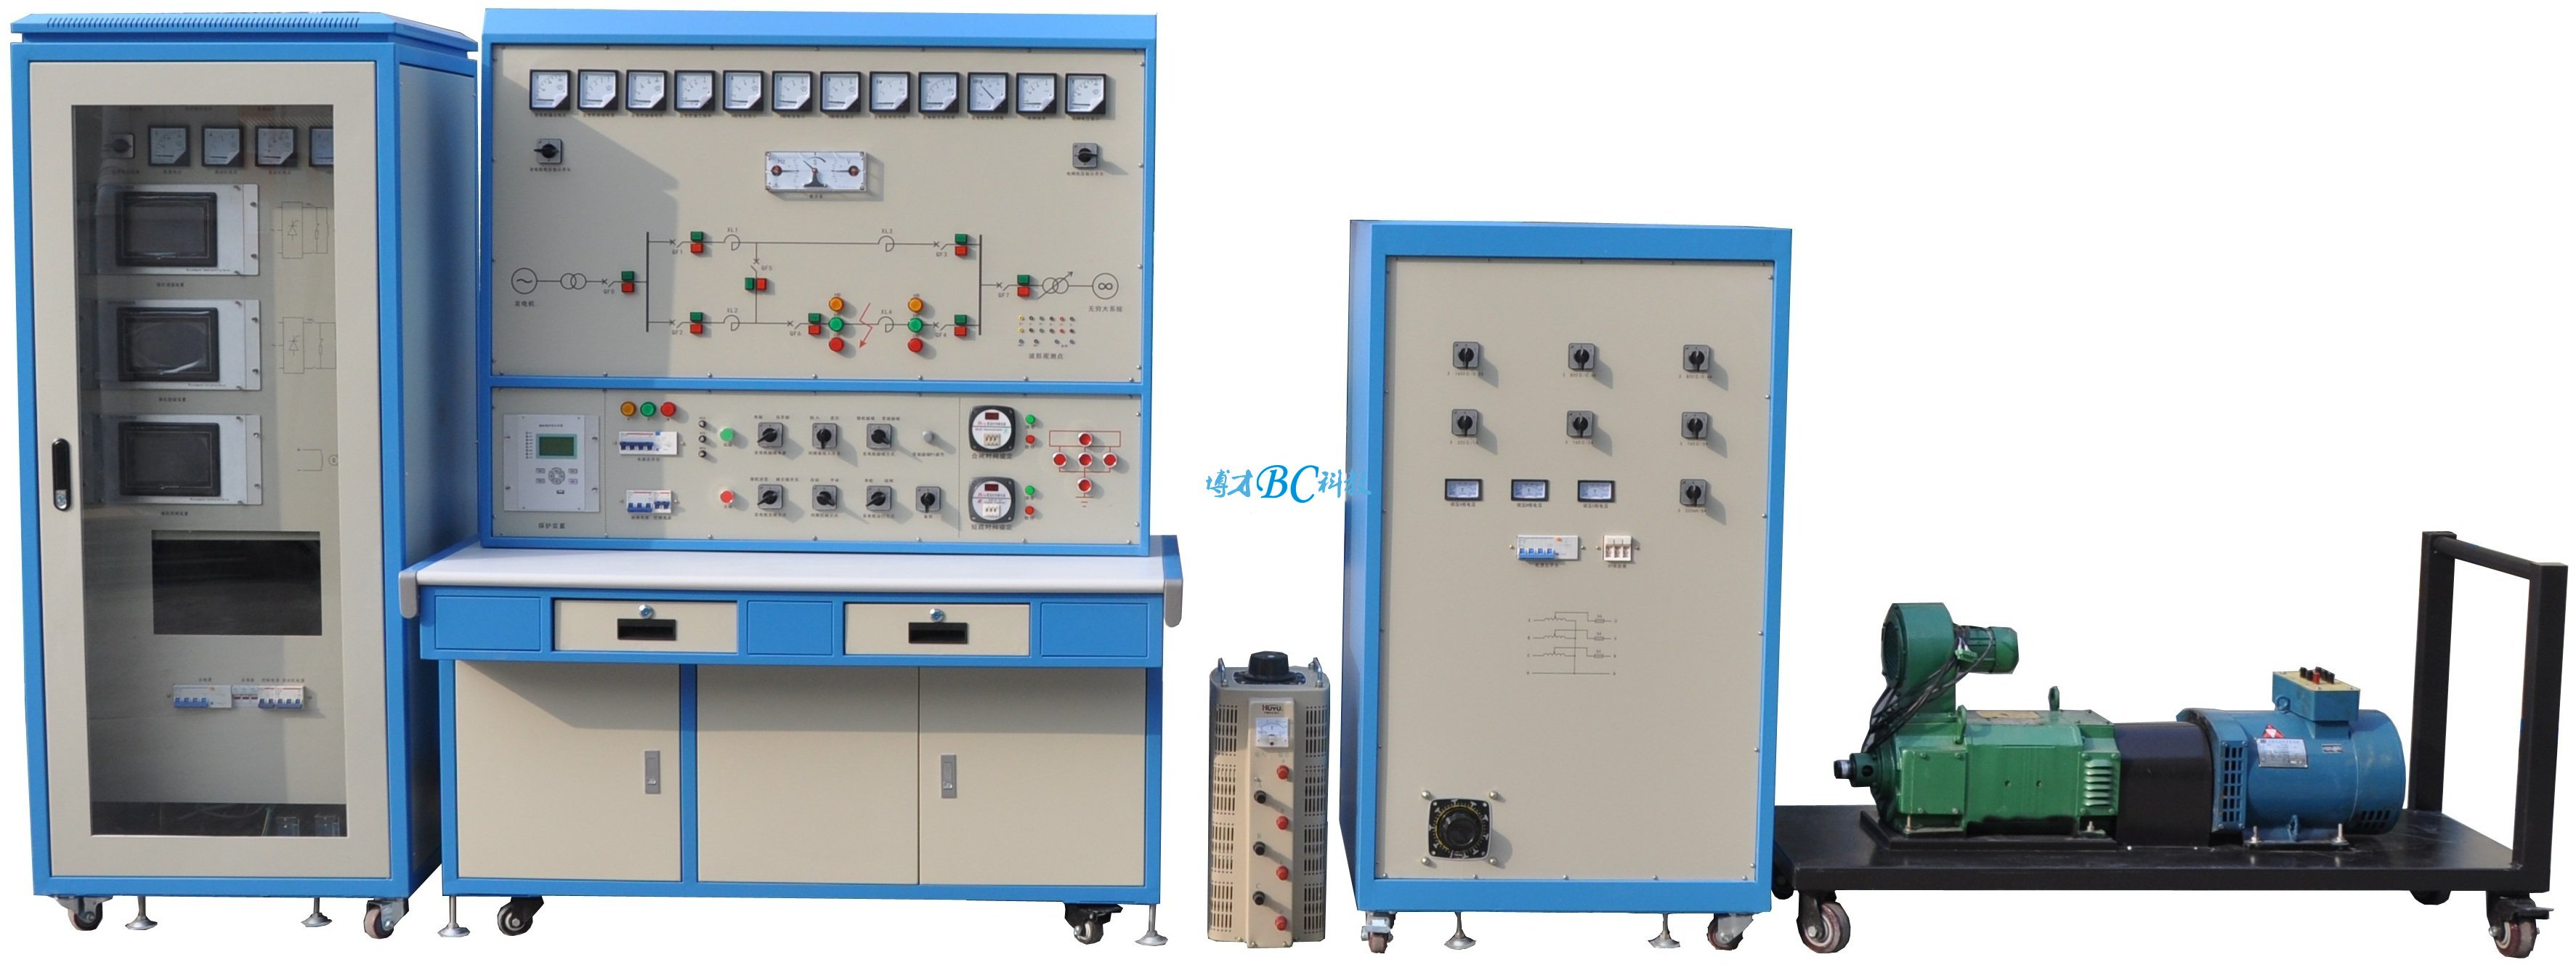 BCDLX-14 电力系统综合自动化技能实训考核装置